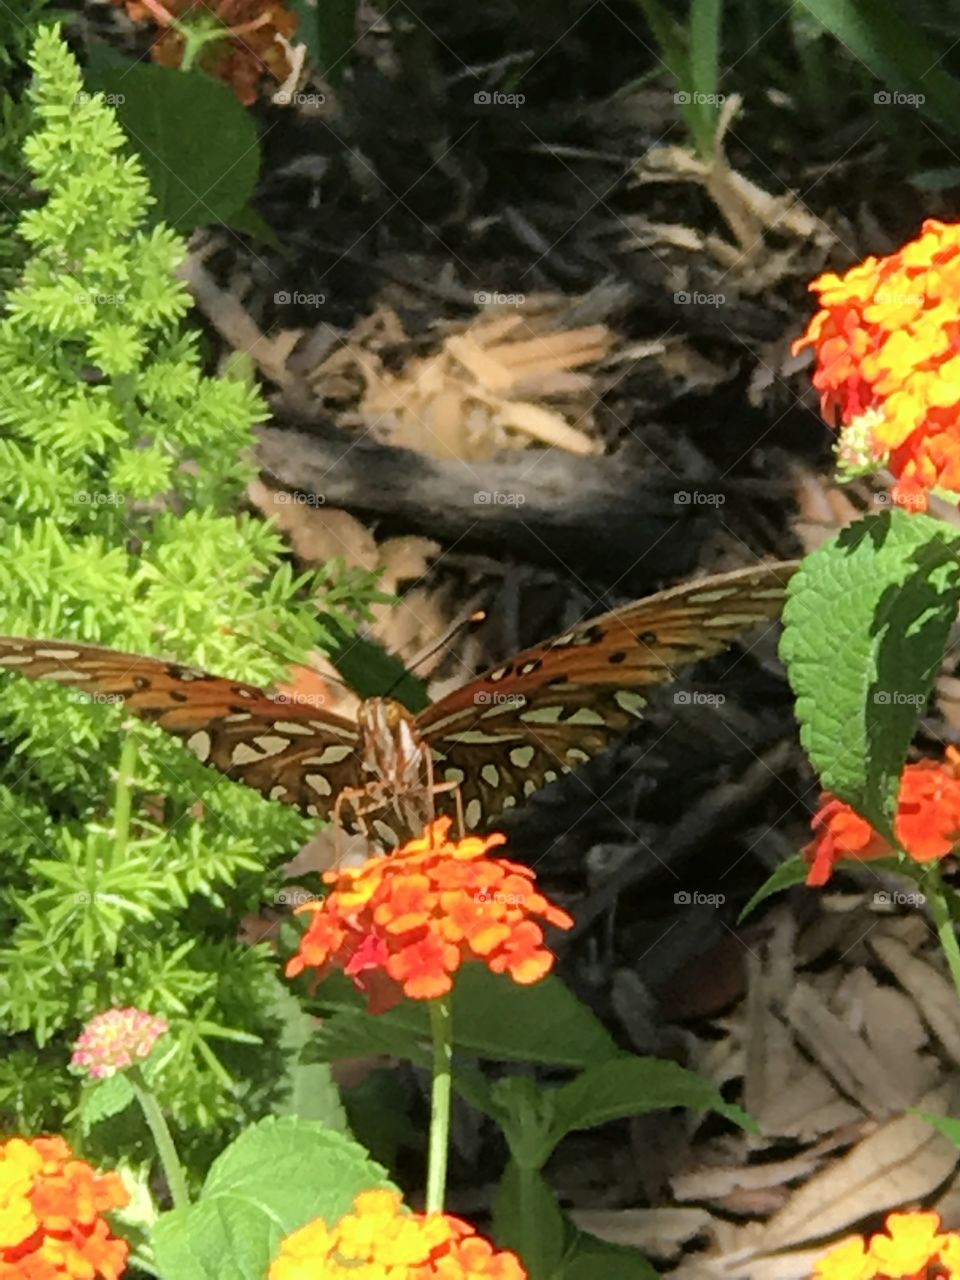 Butterfly on orange flowers
